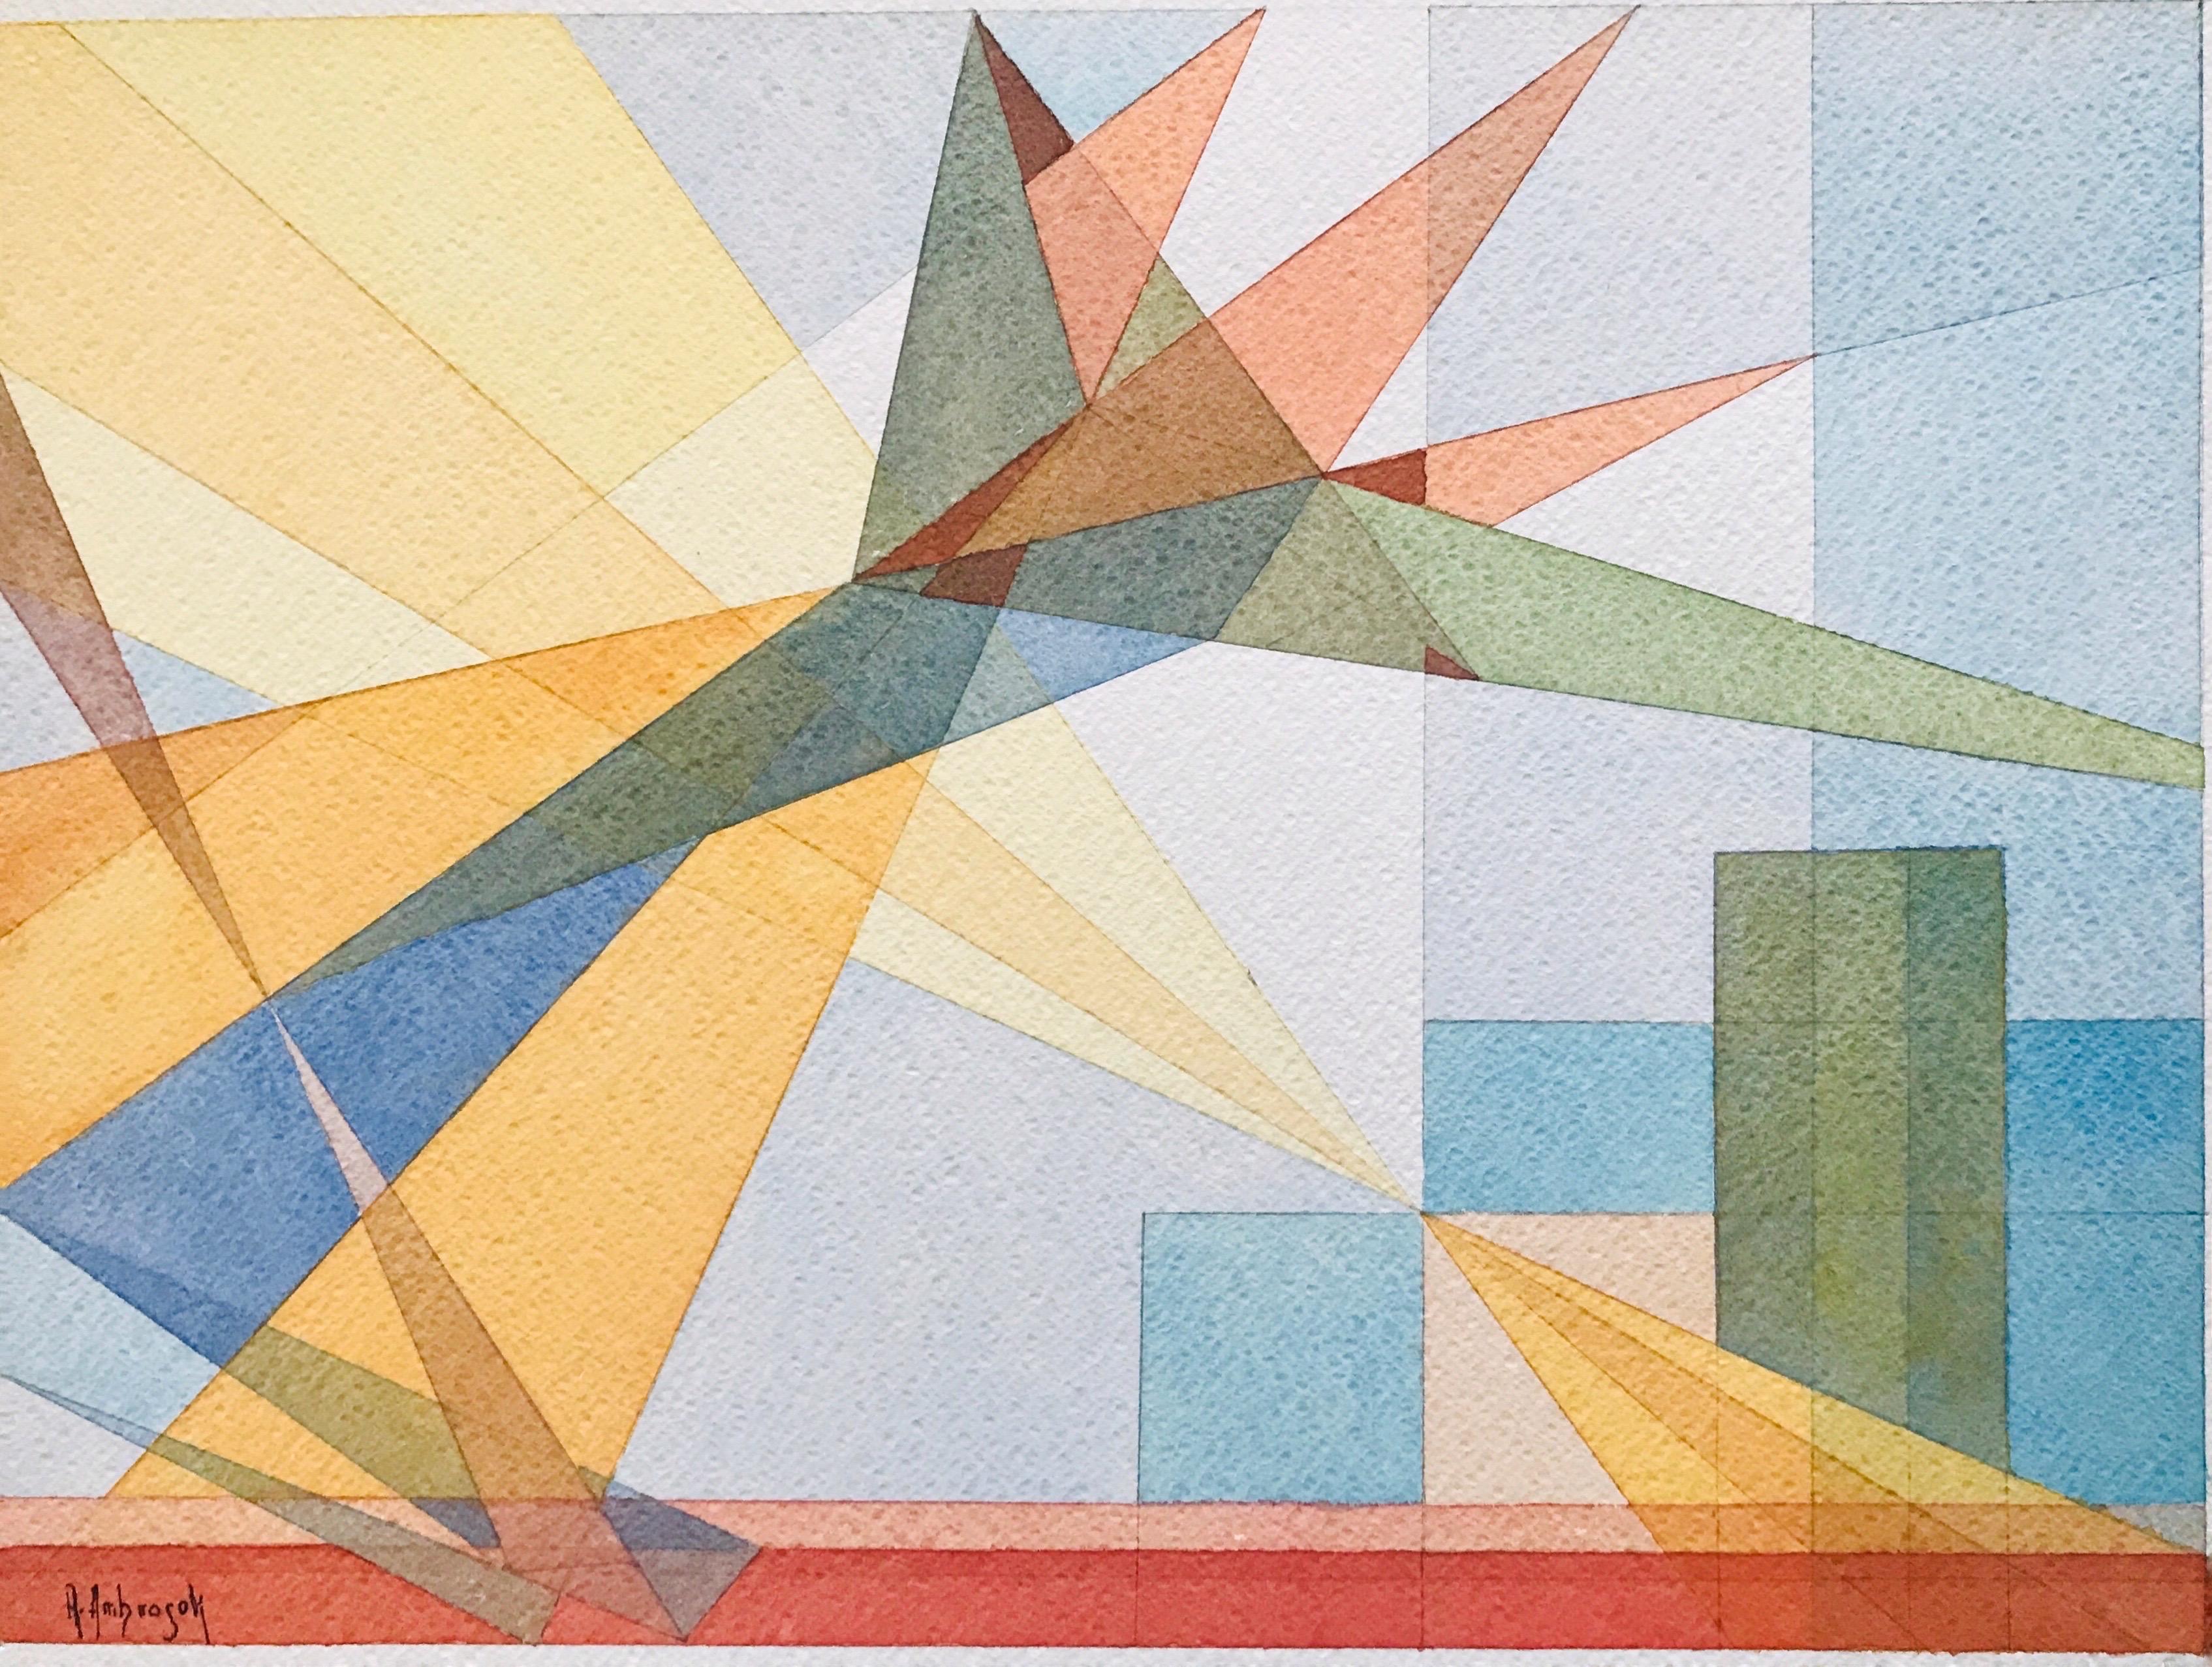 Strelizia with Sun Reflections ist ein Aquarell der zeitgenössischen Künstlerin Annemarie Ambrosoli, gemalt auf 600 g/m² Fabriano-Karton, mit den Maßen 34 x 46 cm.
Oberfläche des Kartons: grobe Körnung.
Dieses Bild ist Teil einer Serie von